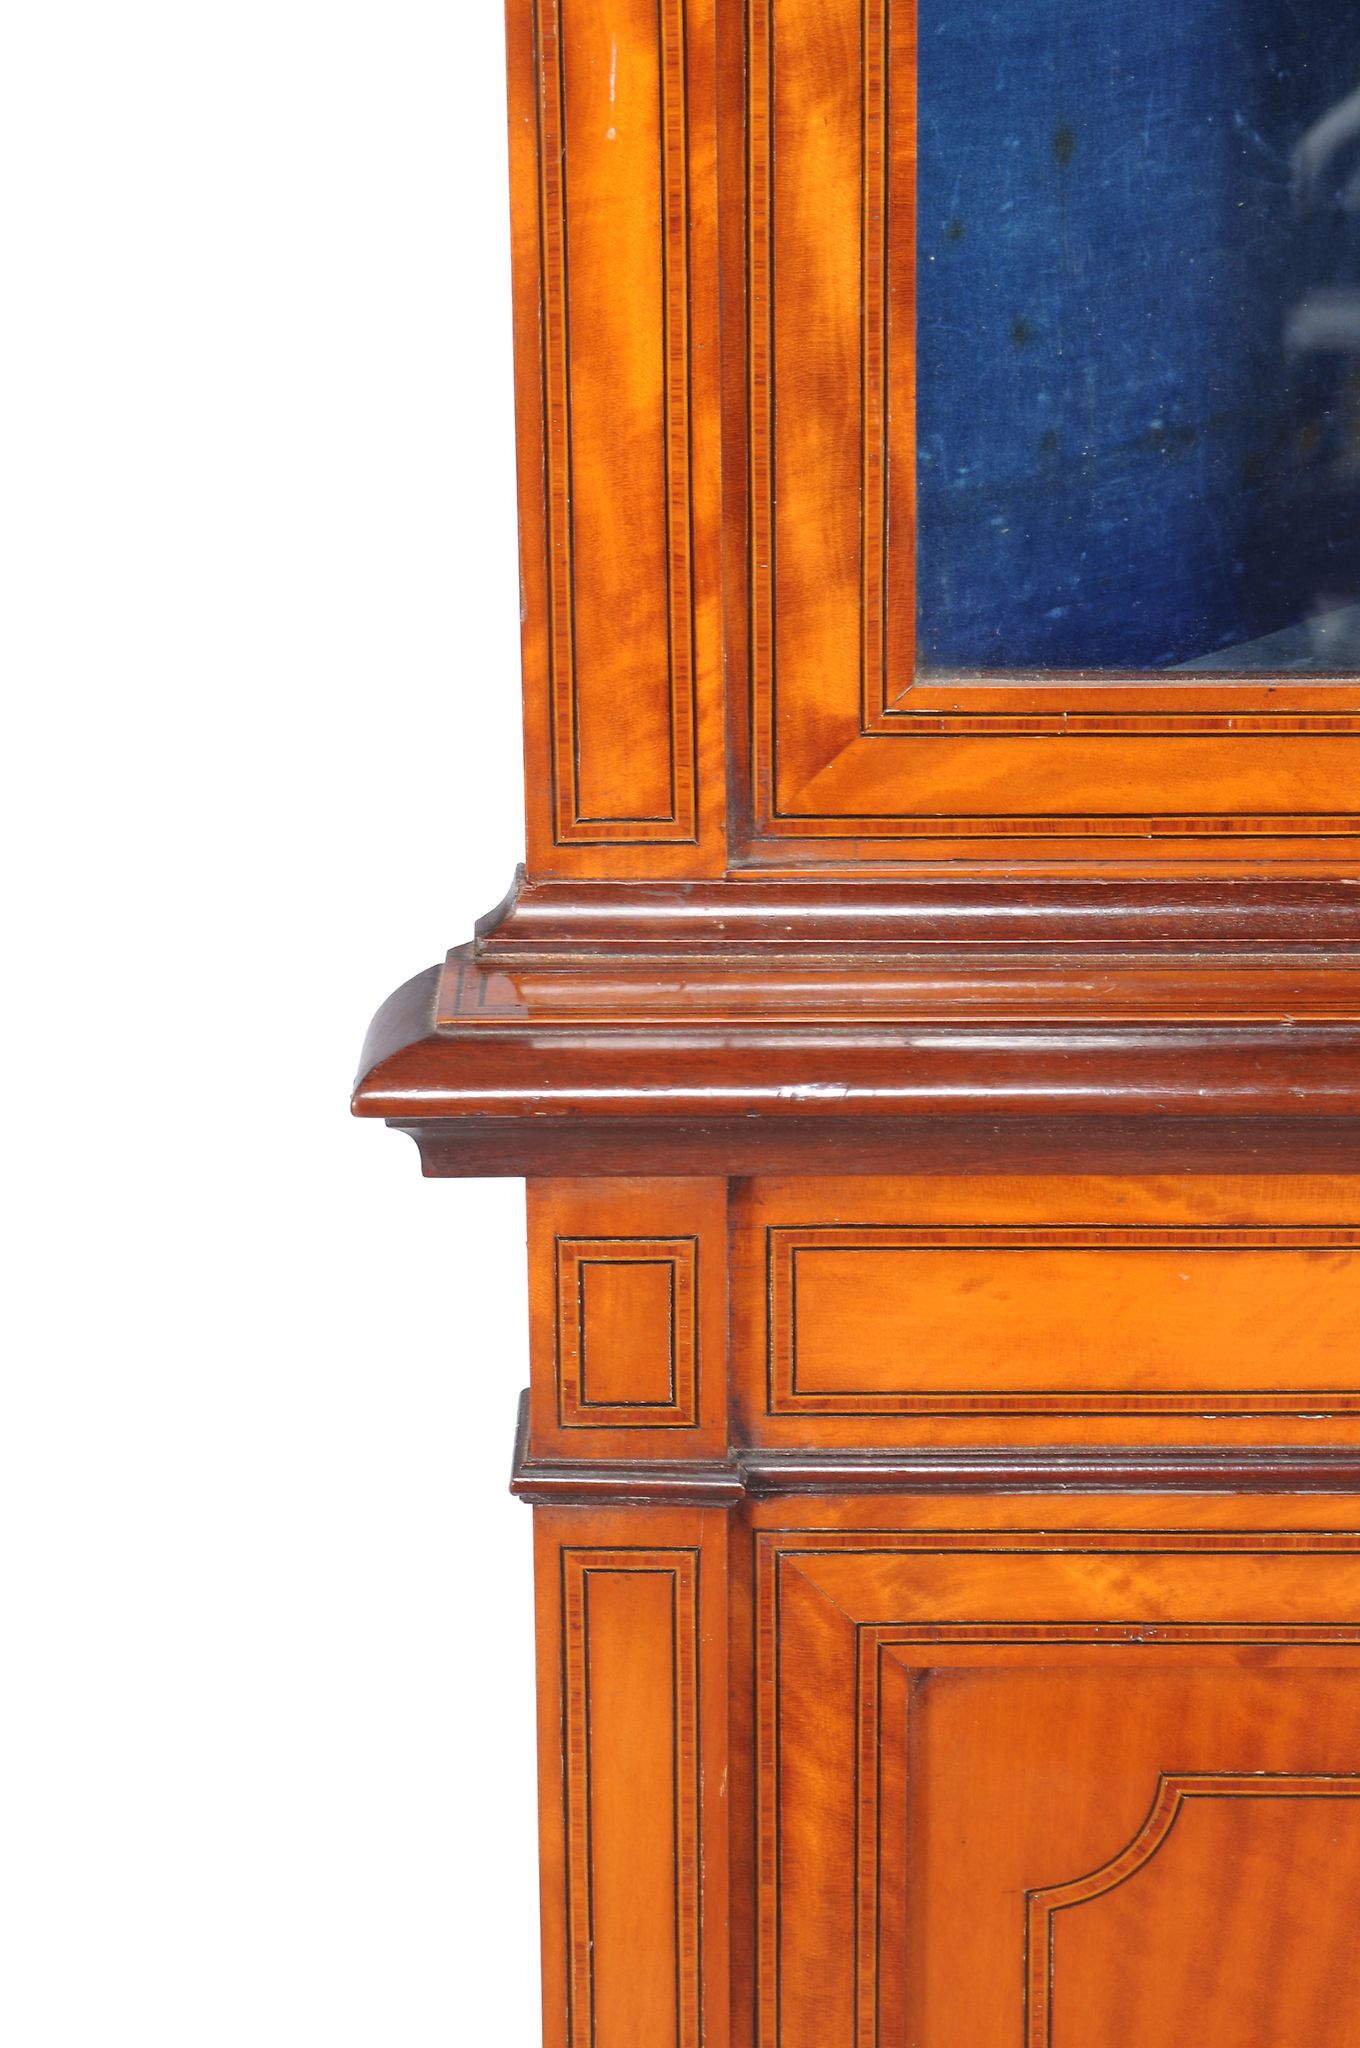 Ω An Edwardian satinwood and rosewood banded corner cabinet, circa 1905, 198cm high, 85cm wide - Image 2 of 2